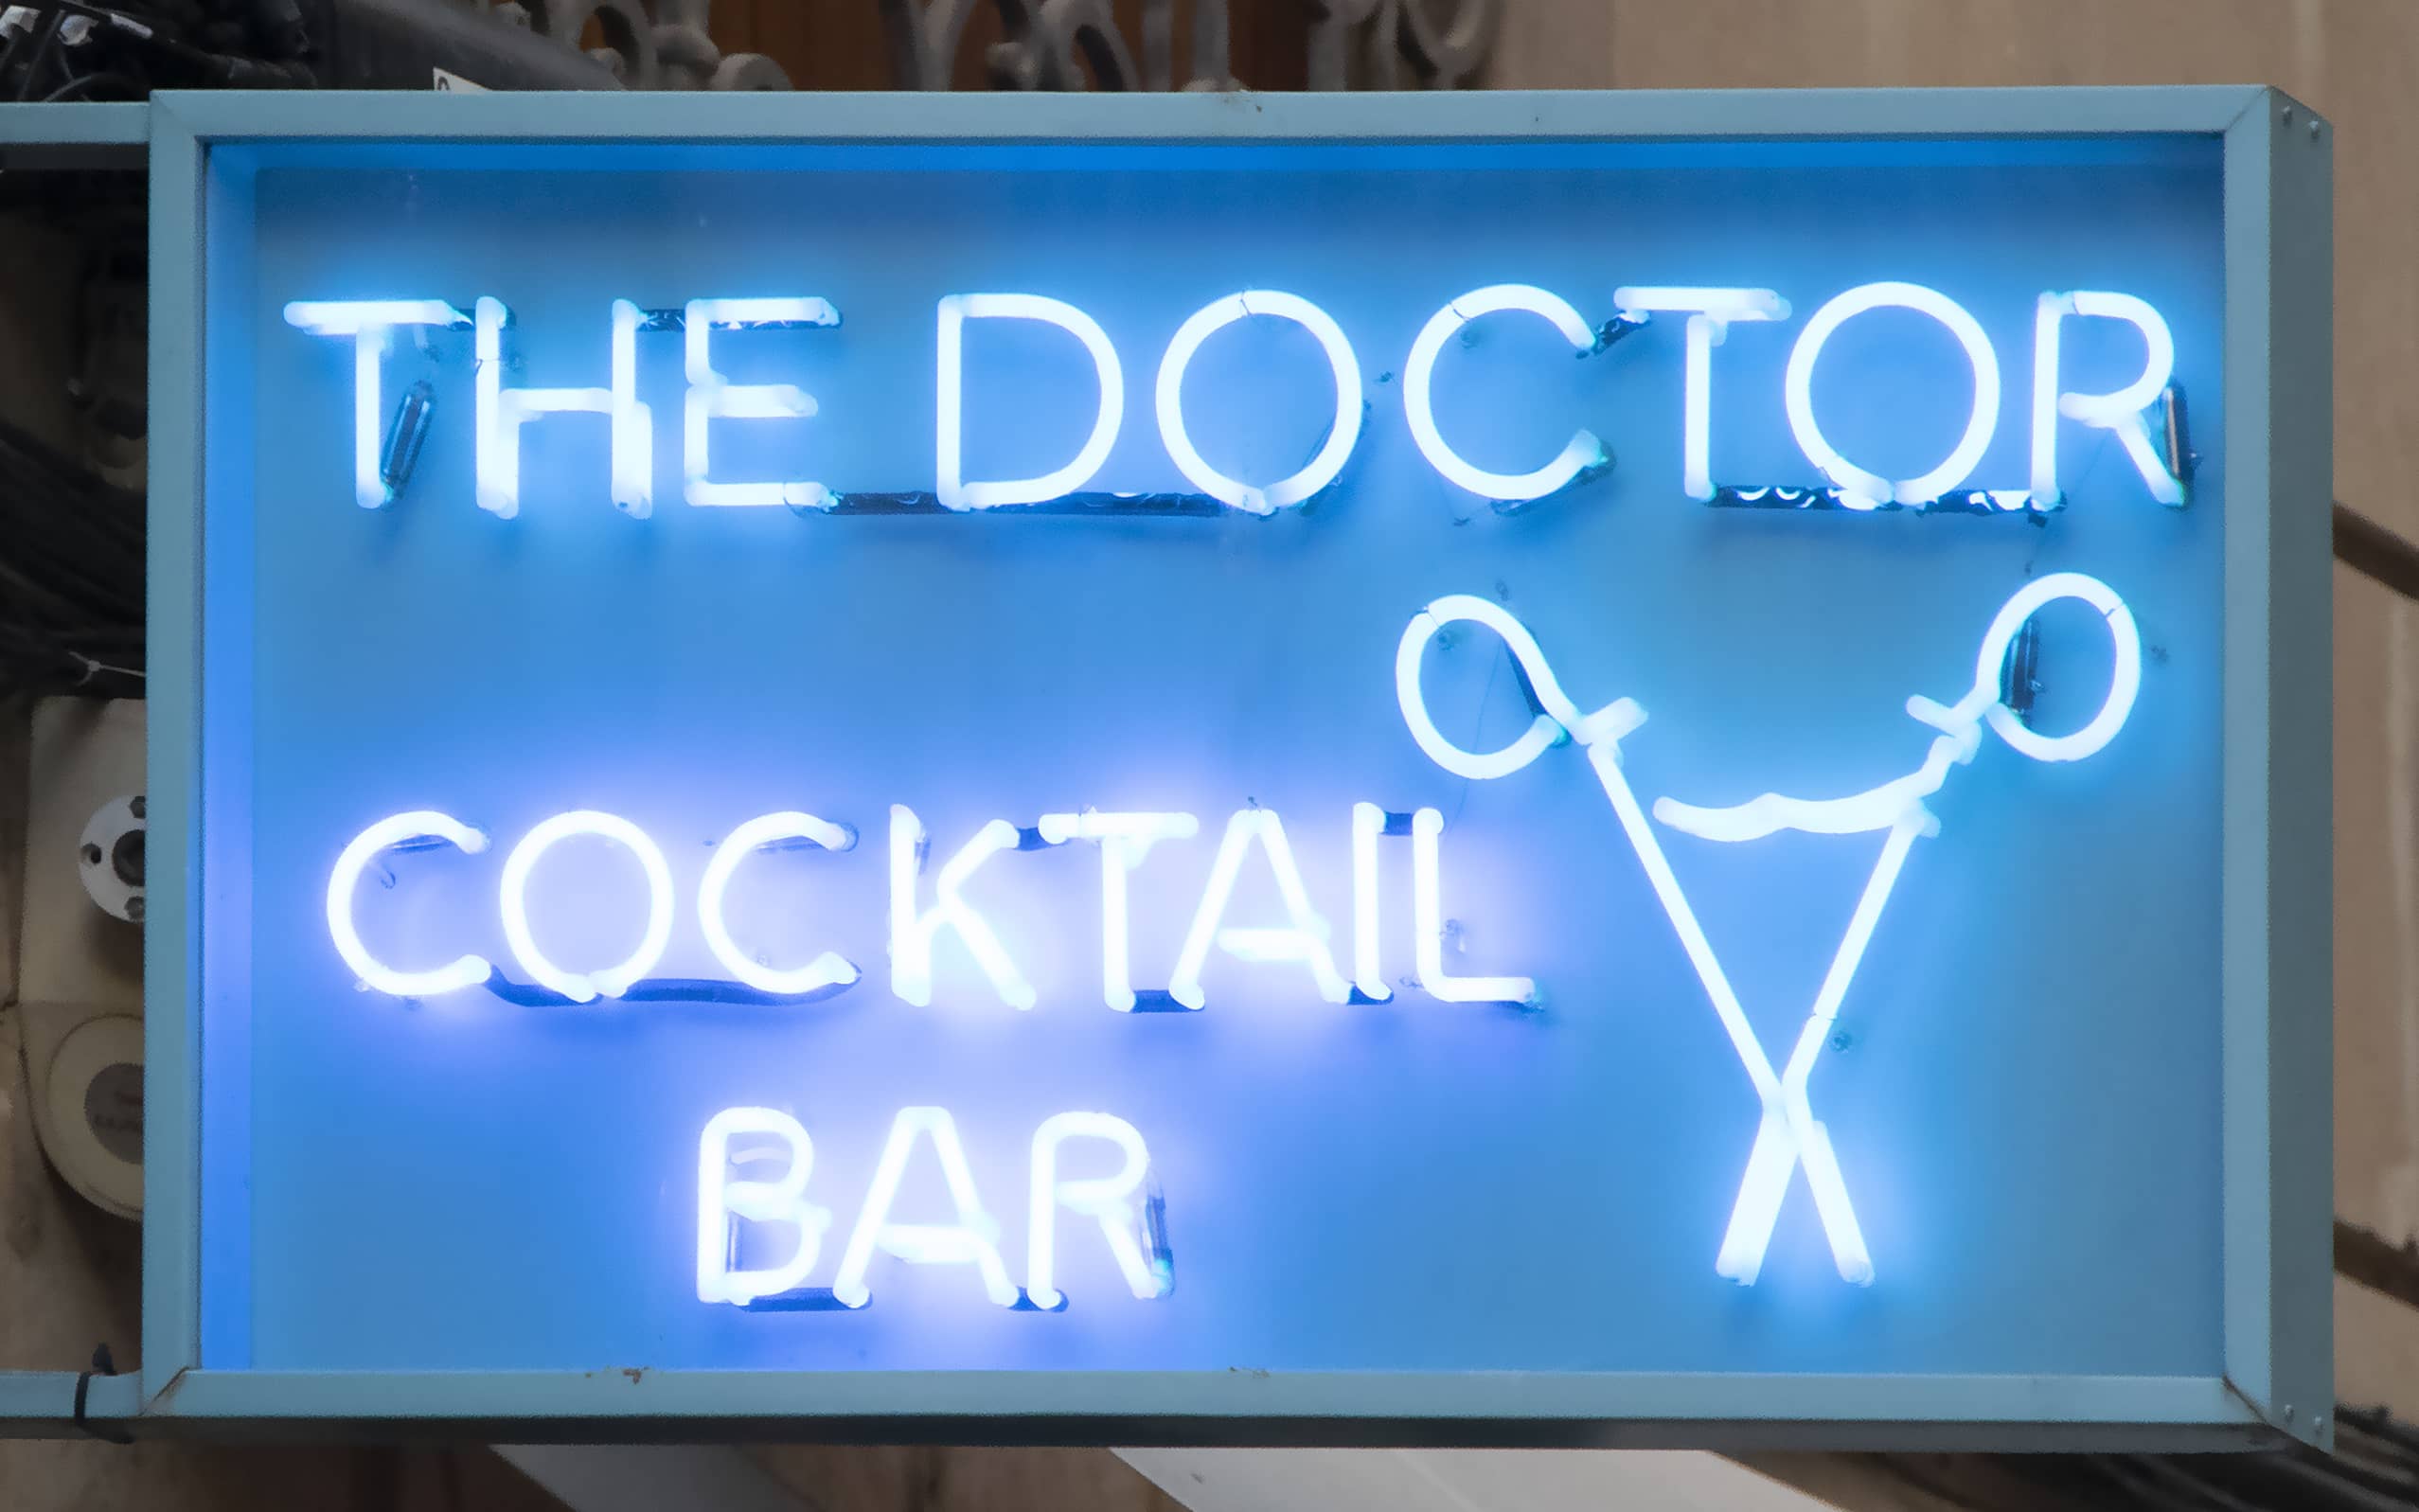 Banderola con letras y logotipo en neón del bar The Doctor Cocktail